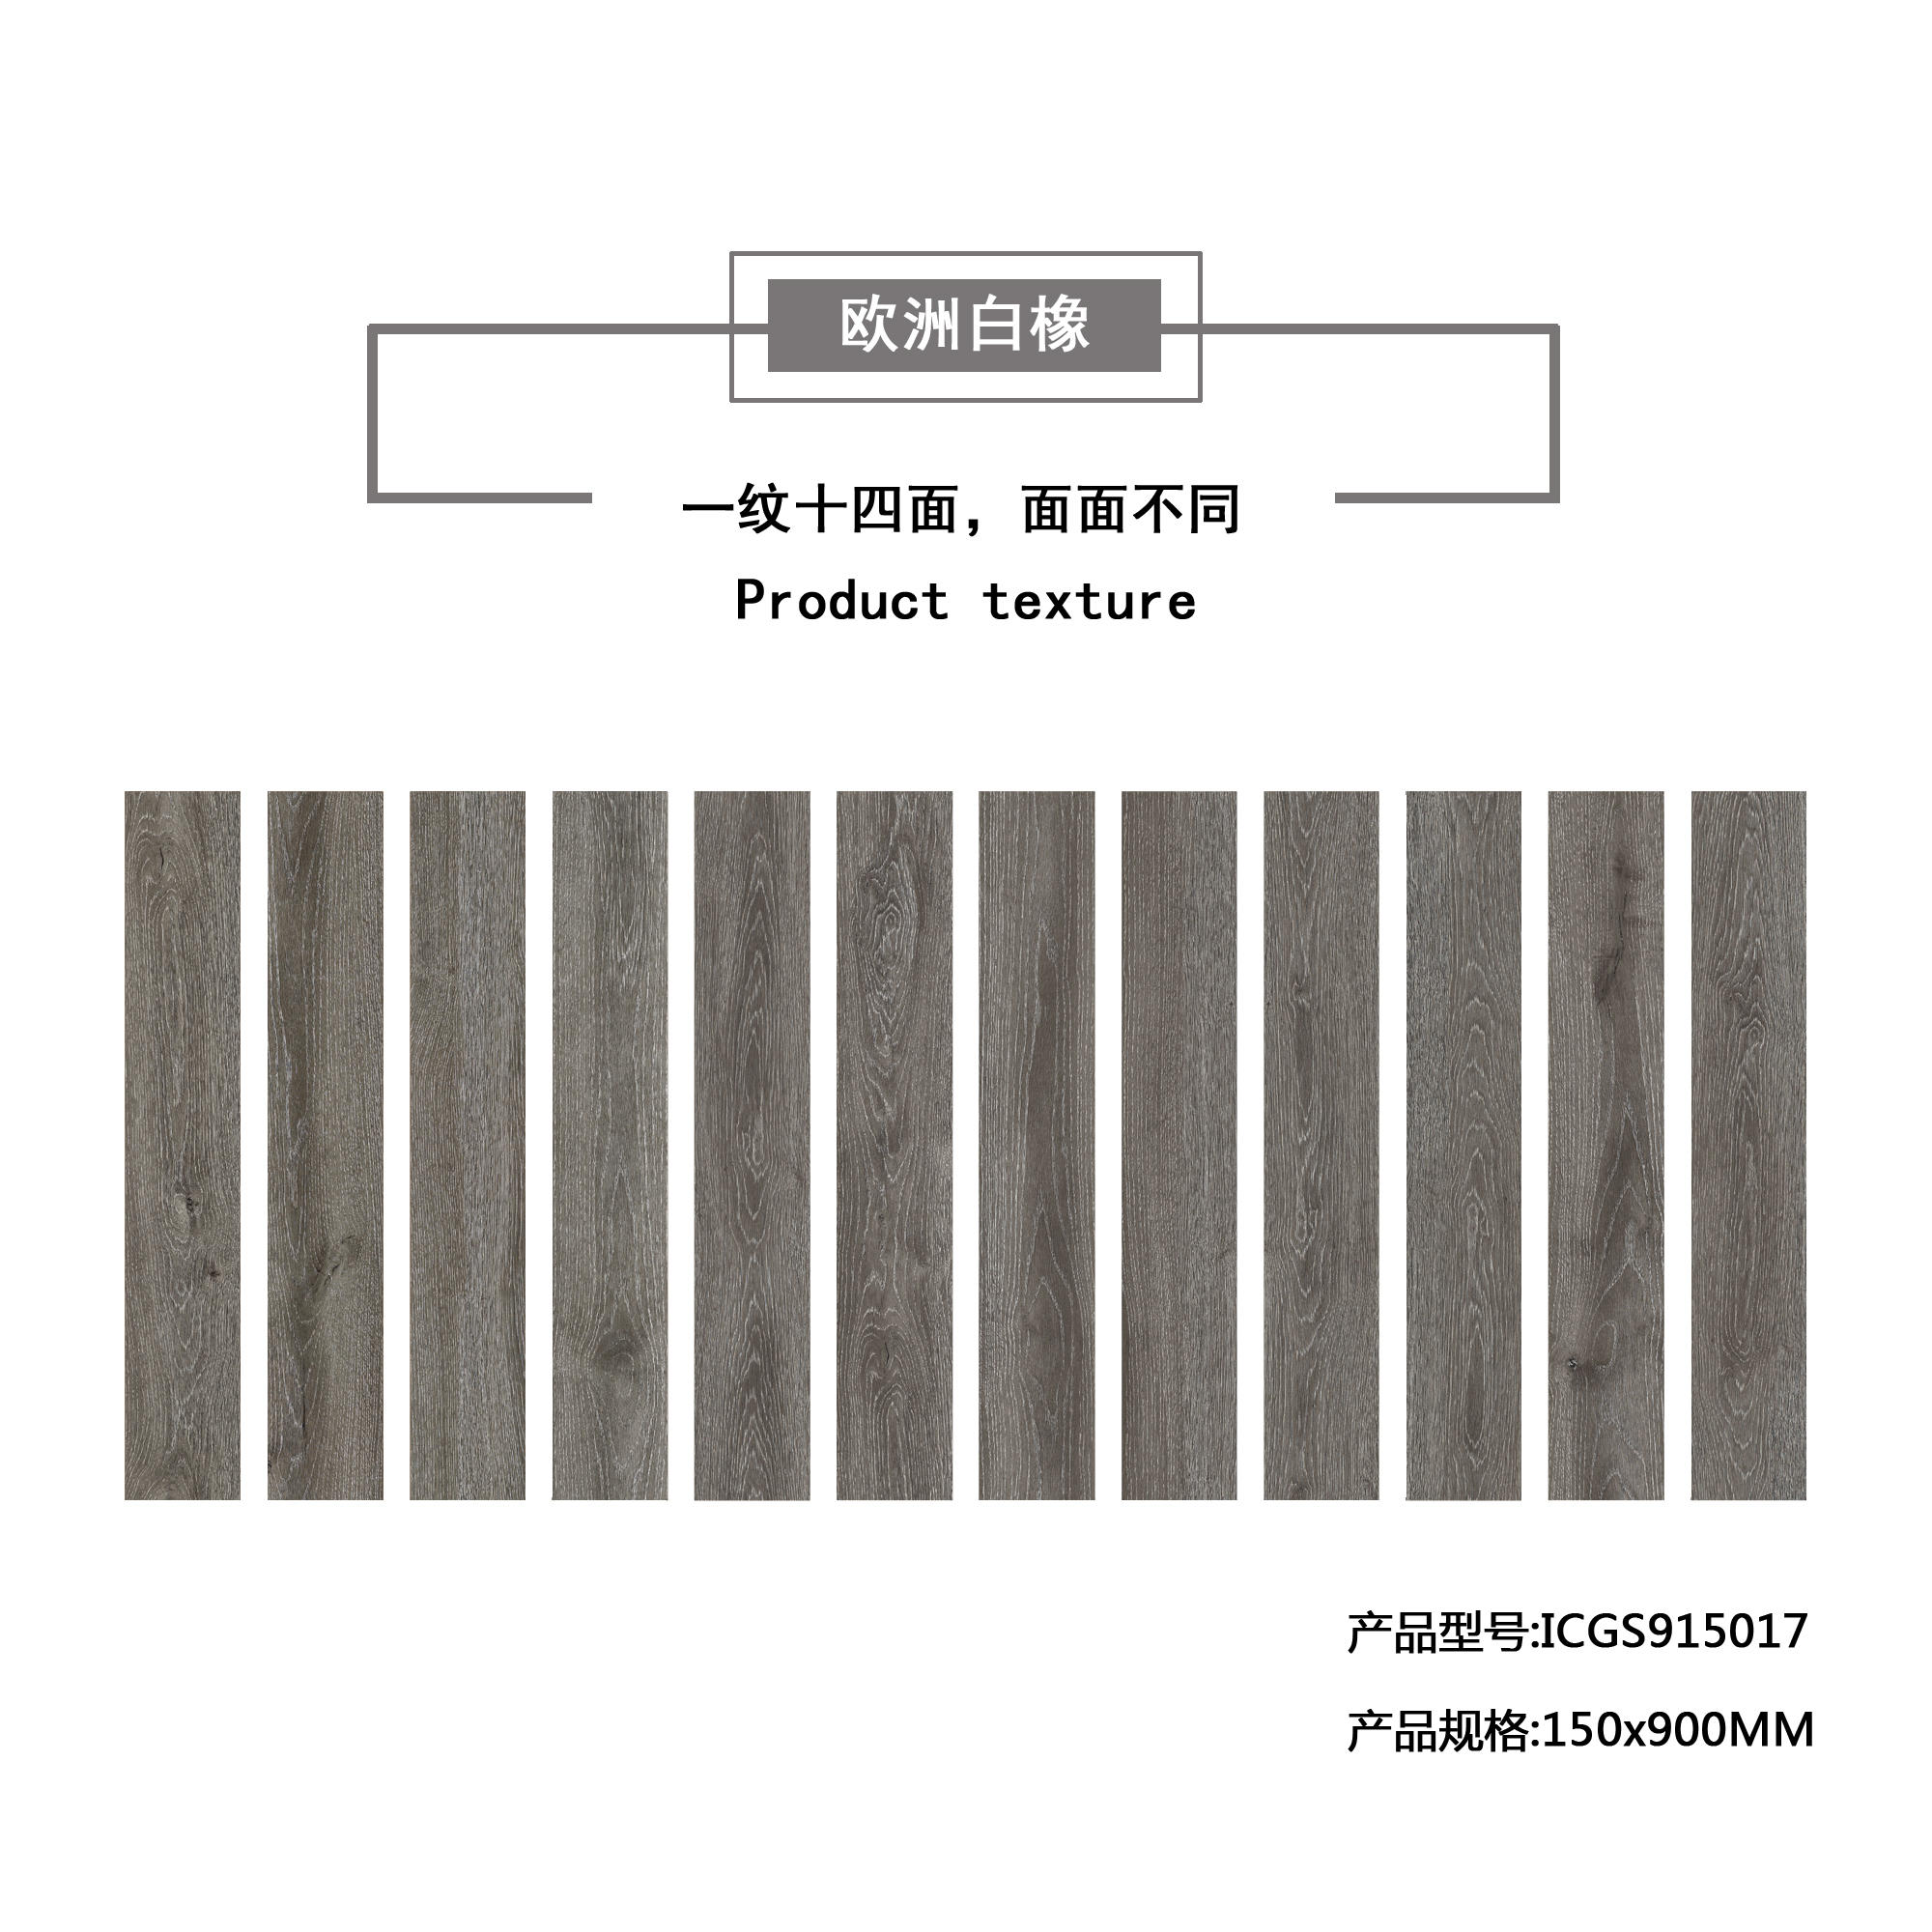 欧洲白橡（深灰）木纹地板砖ICGS915017产品混铺图